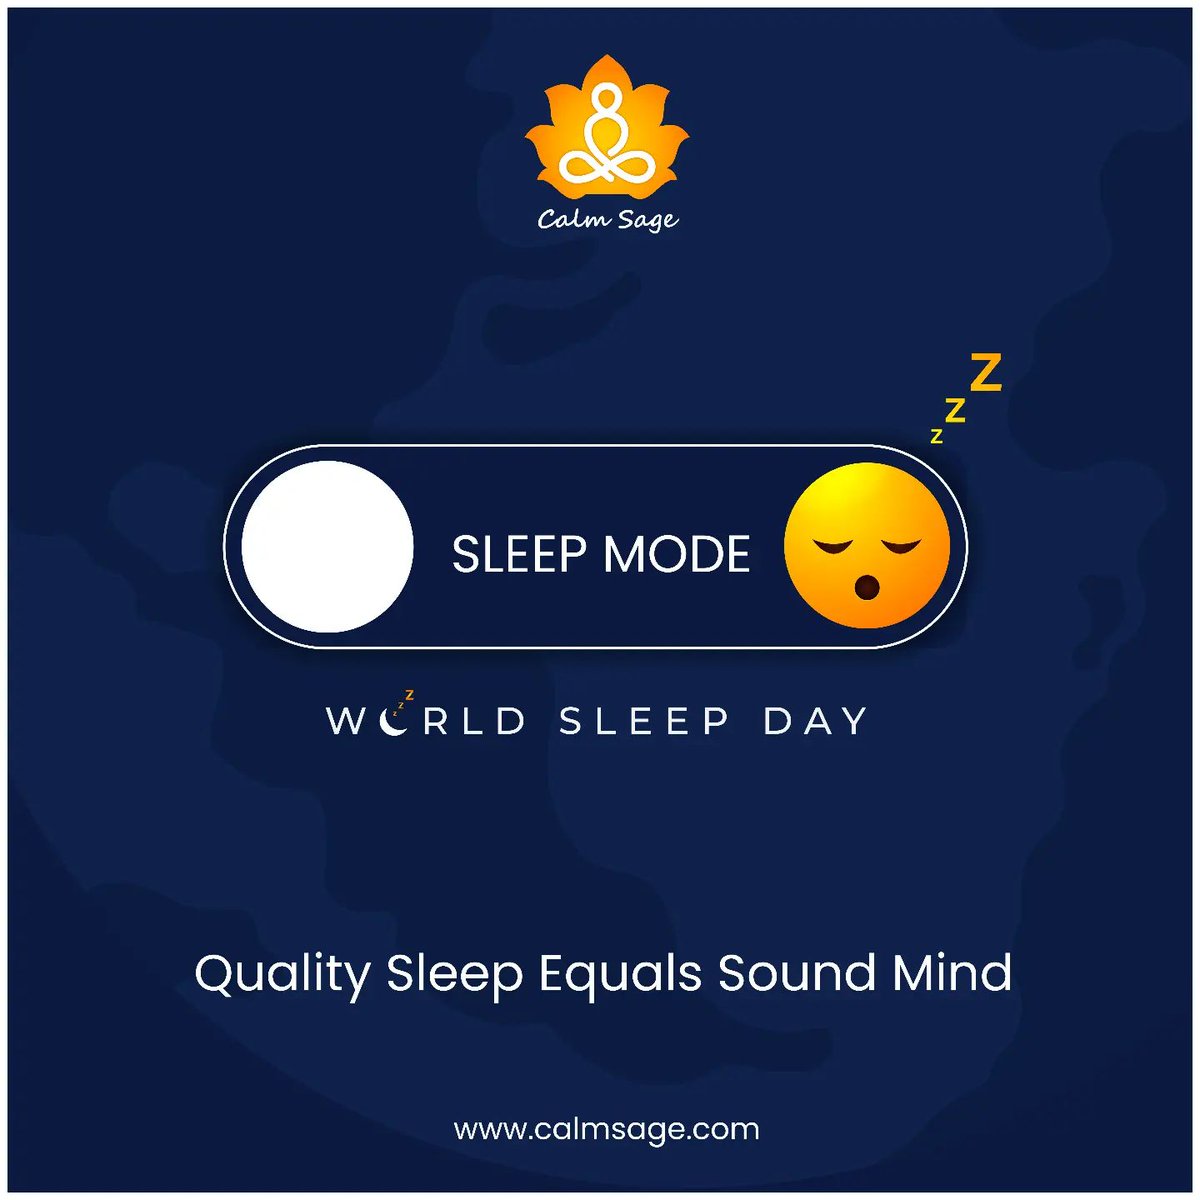 How are you celebrating #WorldSleepDay today? 💤
.
.
#worldsleepday2023 #worldsleepday😴 #sleeptips #sleepbetter #sleeptime #sleepwell #sleephelp #sleepproblems #calmsage